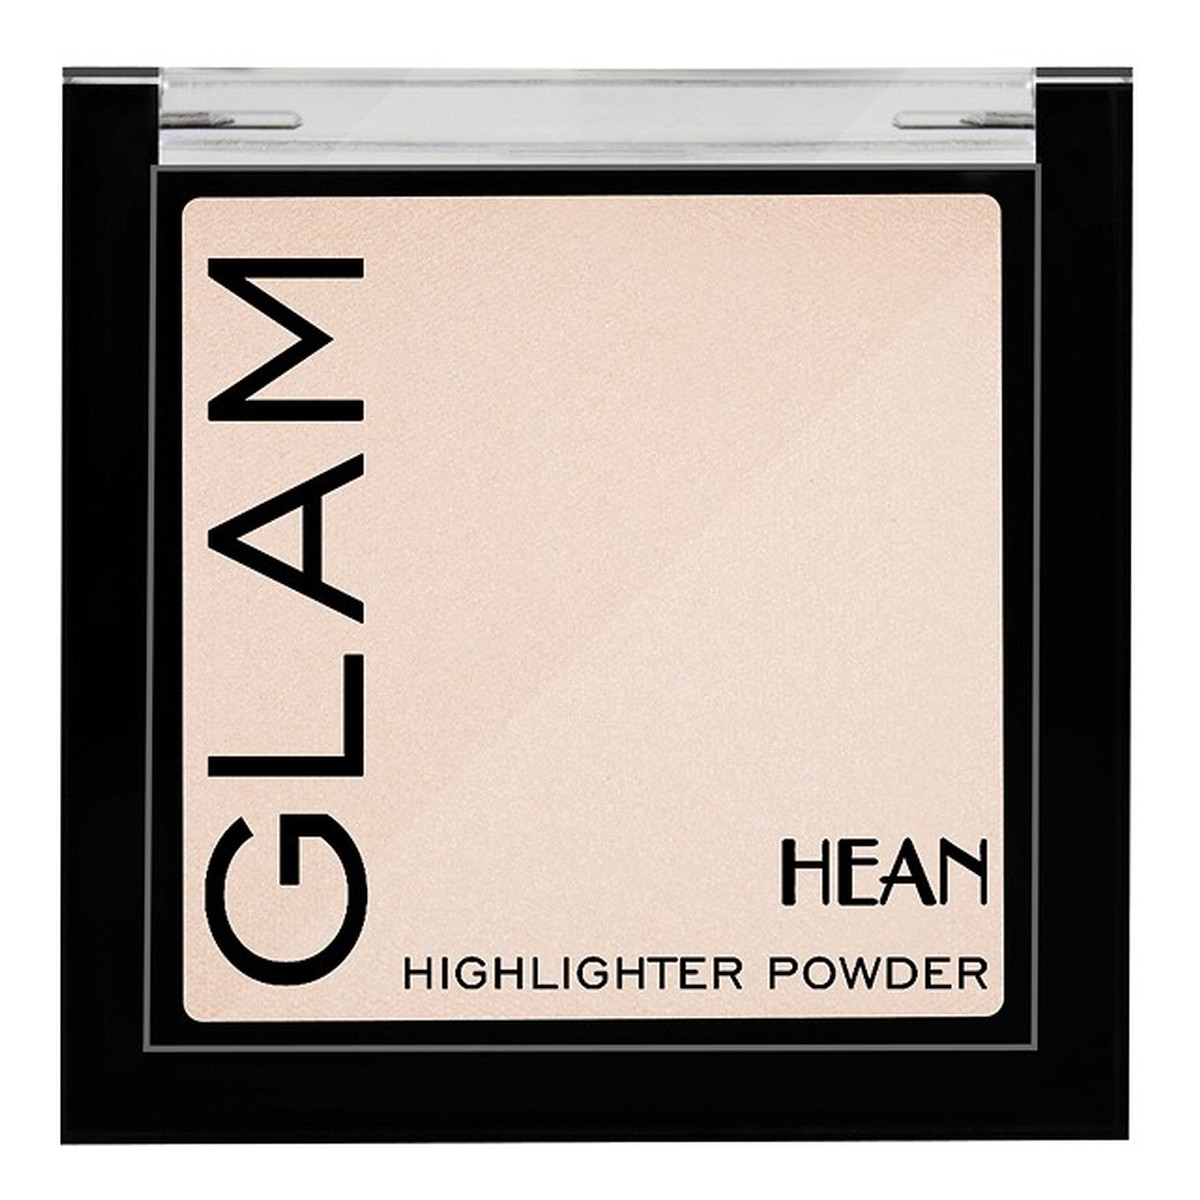 Hean Glam Highlighter Powder Wielofunkcyjny rozświetlacz do twarzy i ciała